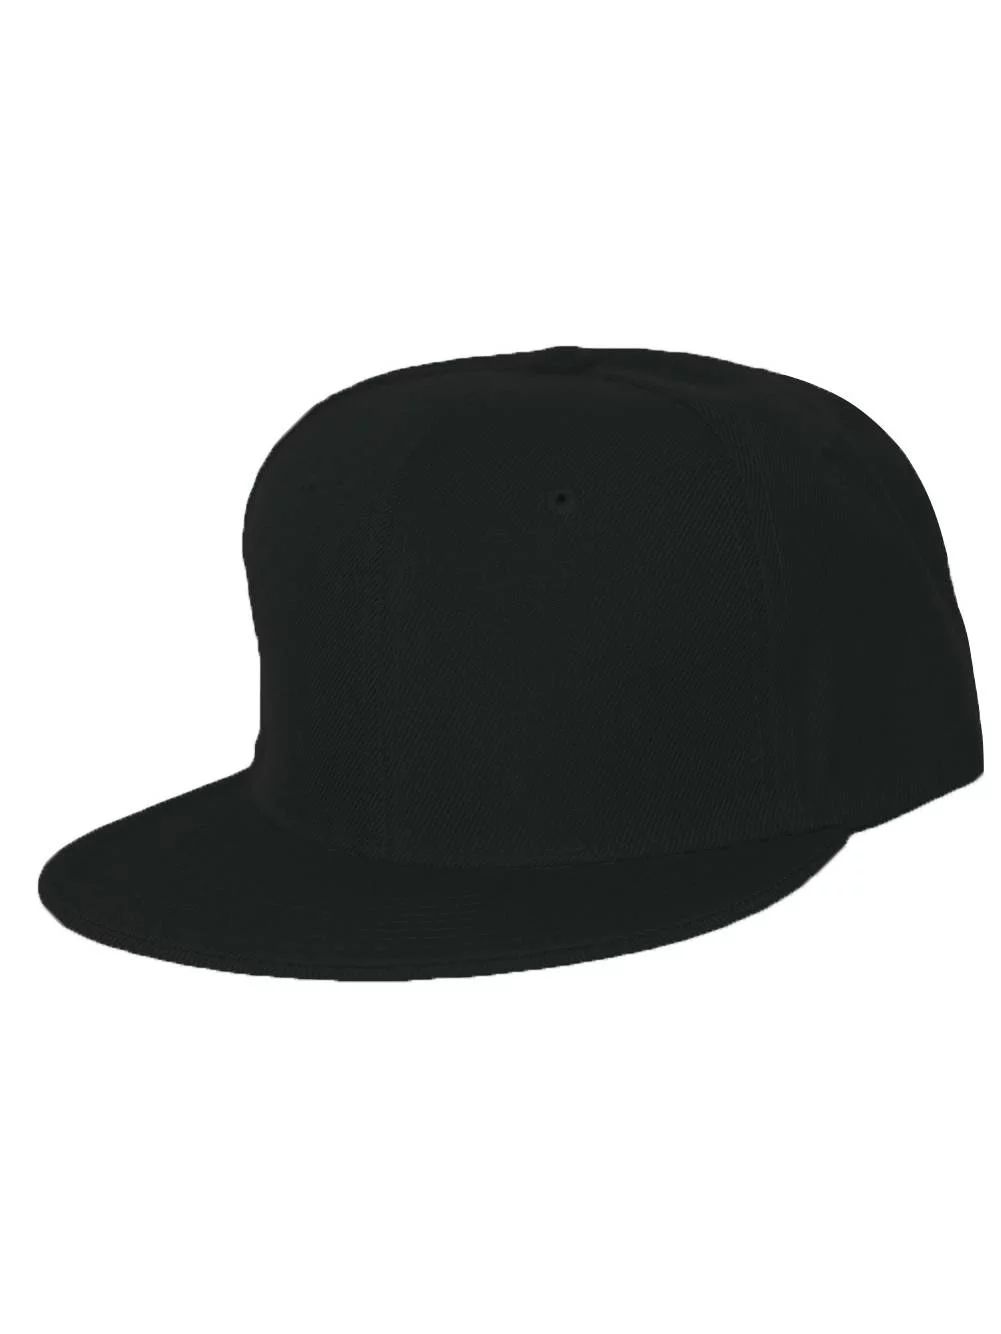 Plain Fitted Flat Bill Hat - Black, 7 5/8 - Walmart.com | Walmart (US)